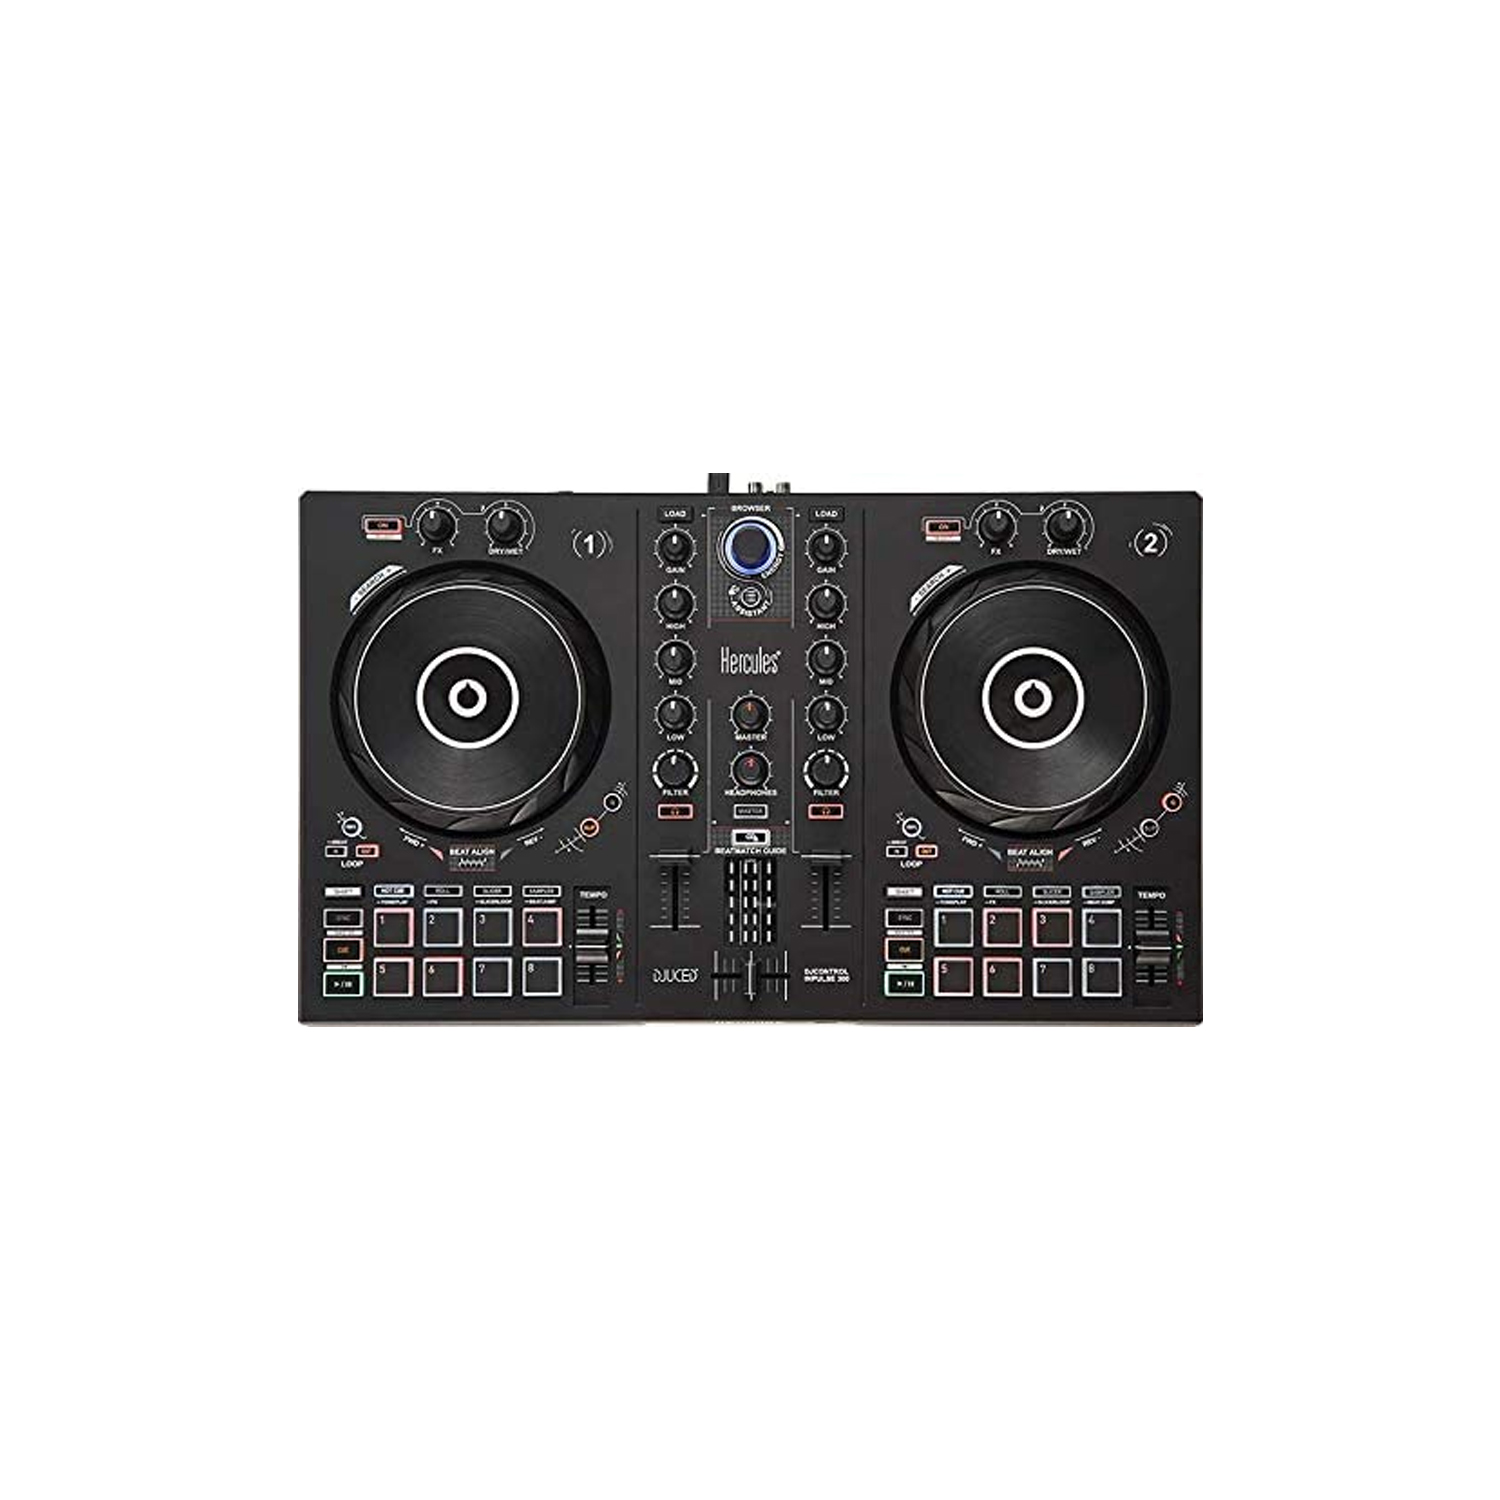 Hercules DJ Control Inpulse 300, Black 